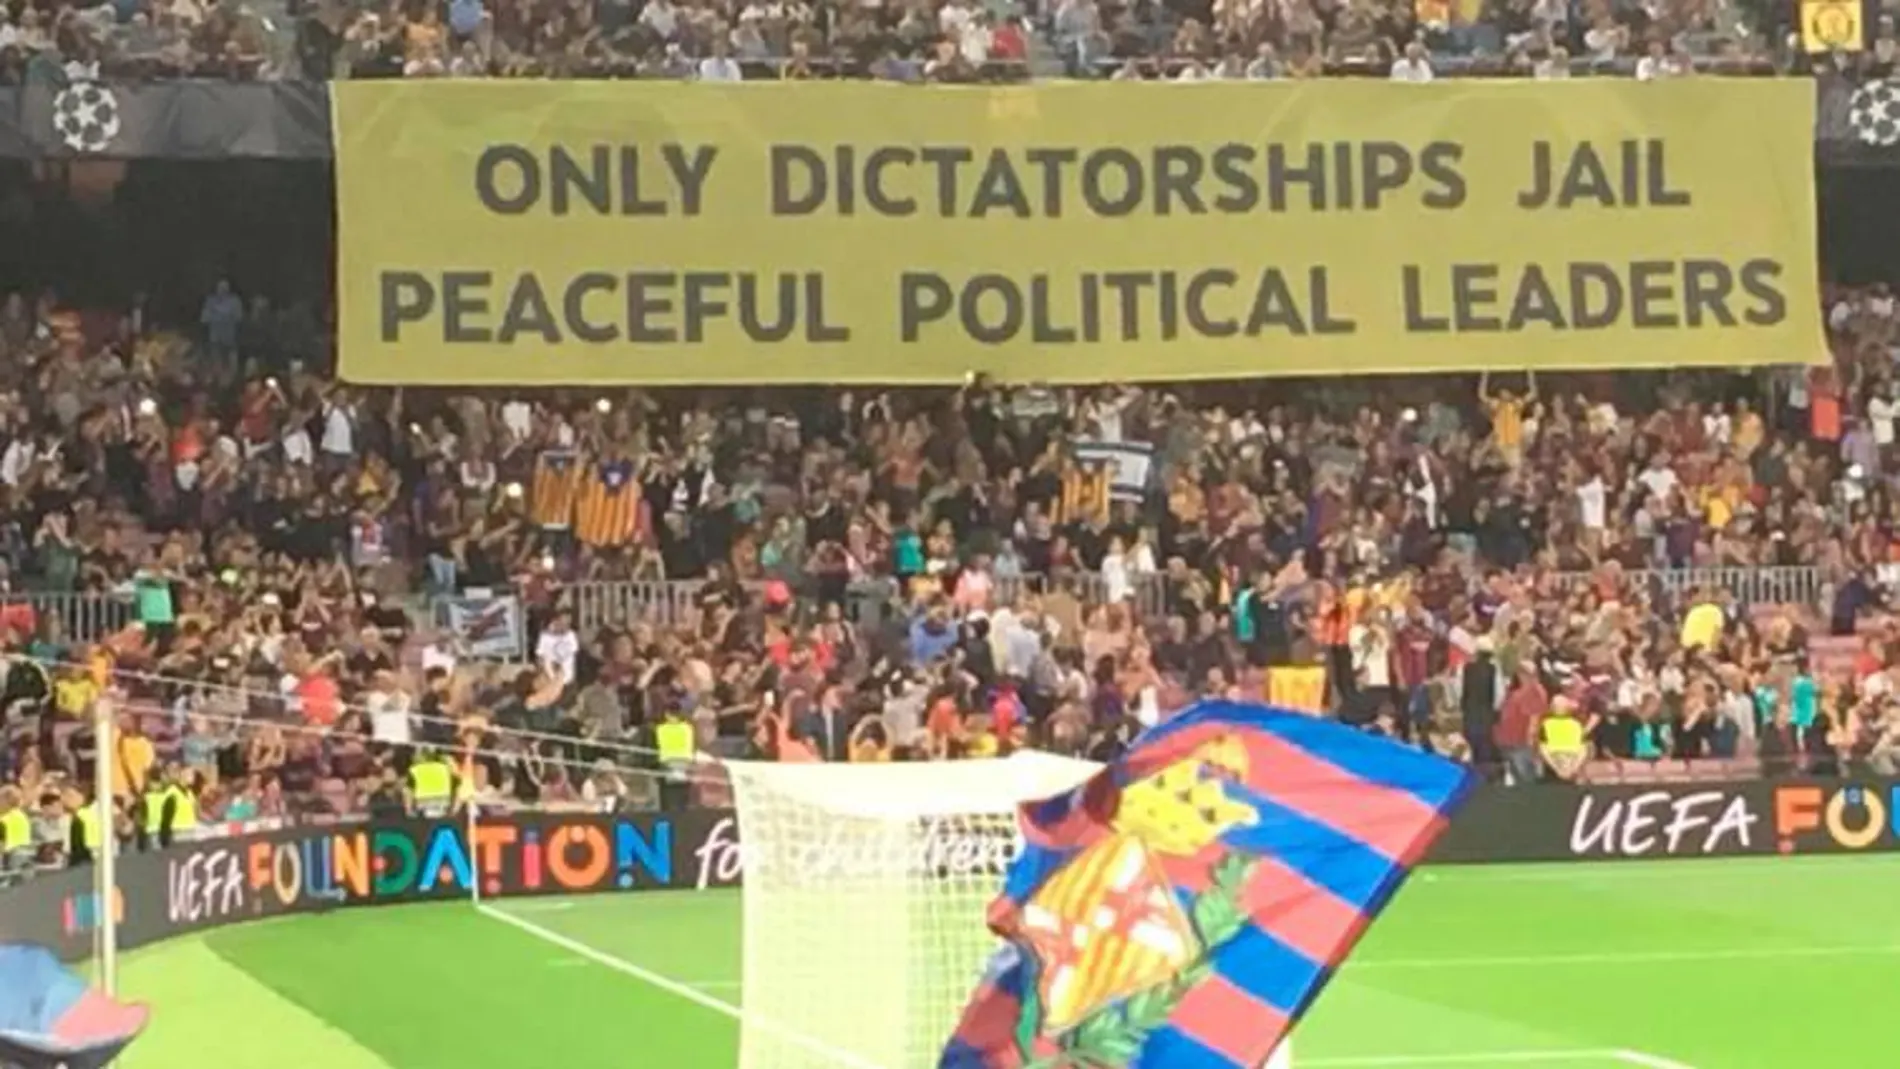 La pancartta que se vio en el Camp Nou hace pocos días